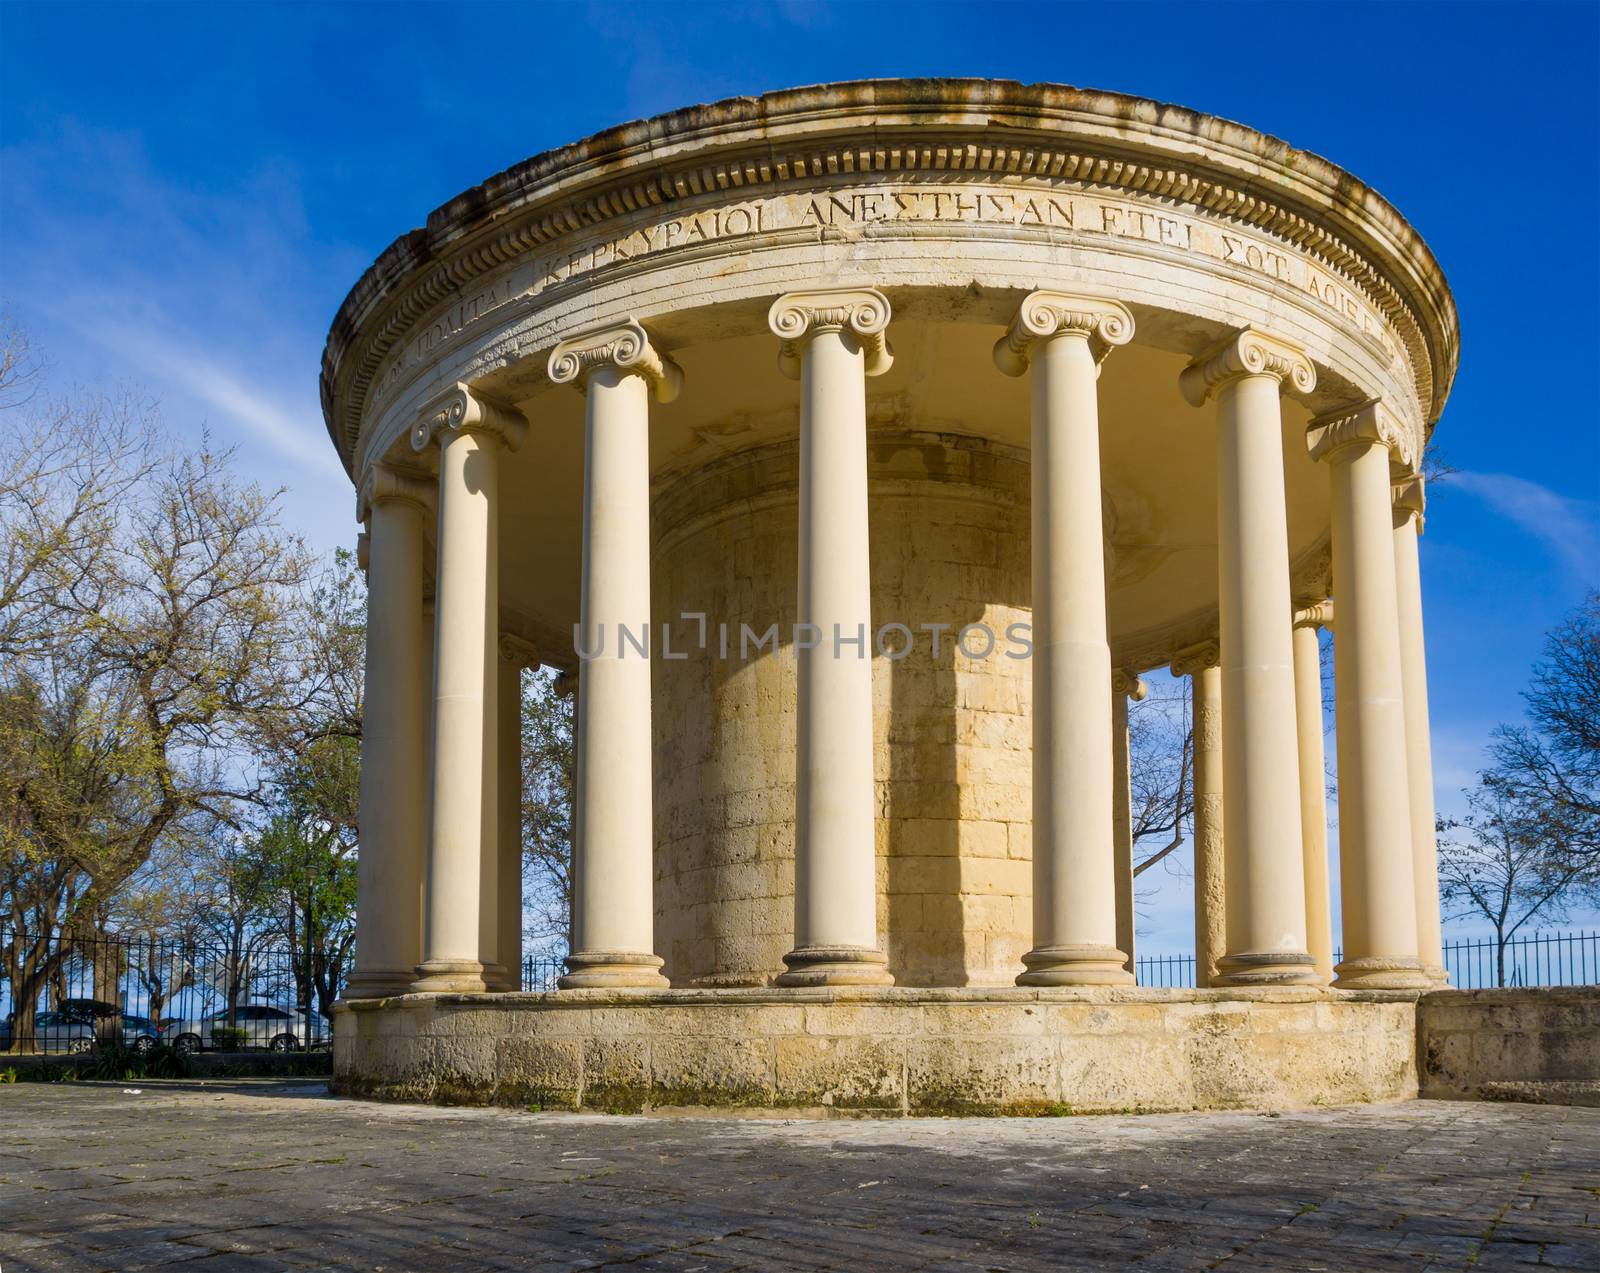 The Maitland Rotunda in Kerkyra, Greece by Netfalls